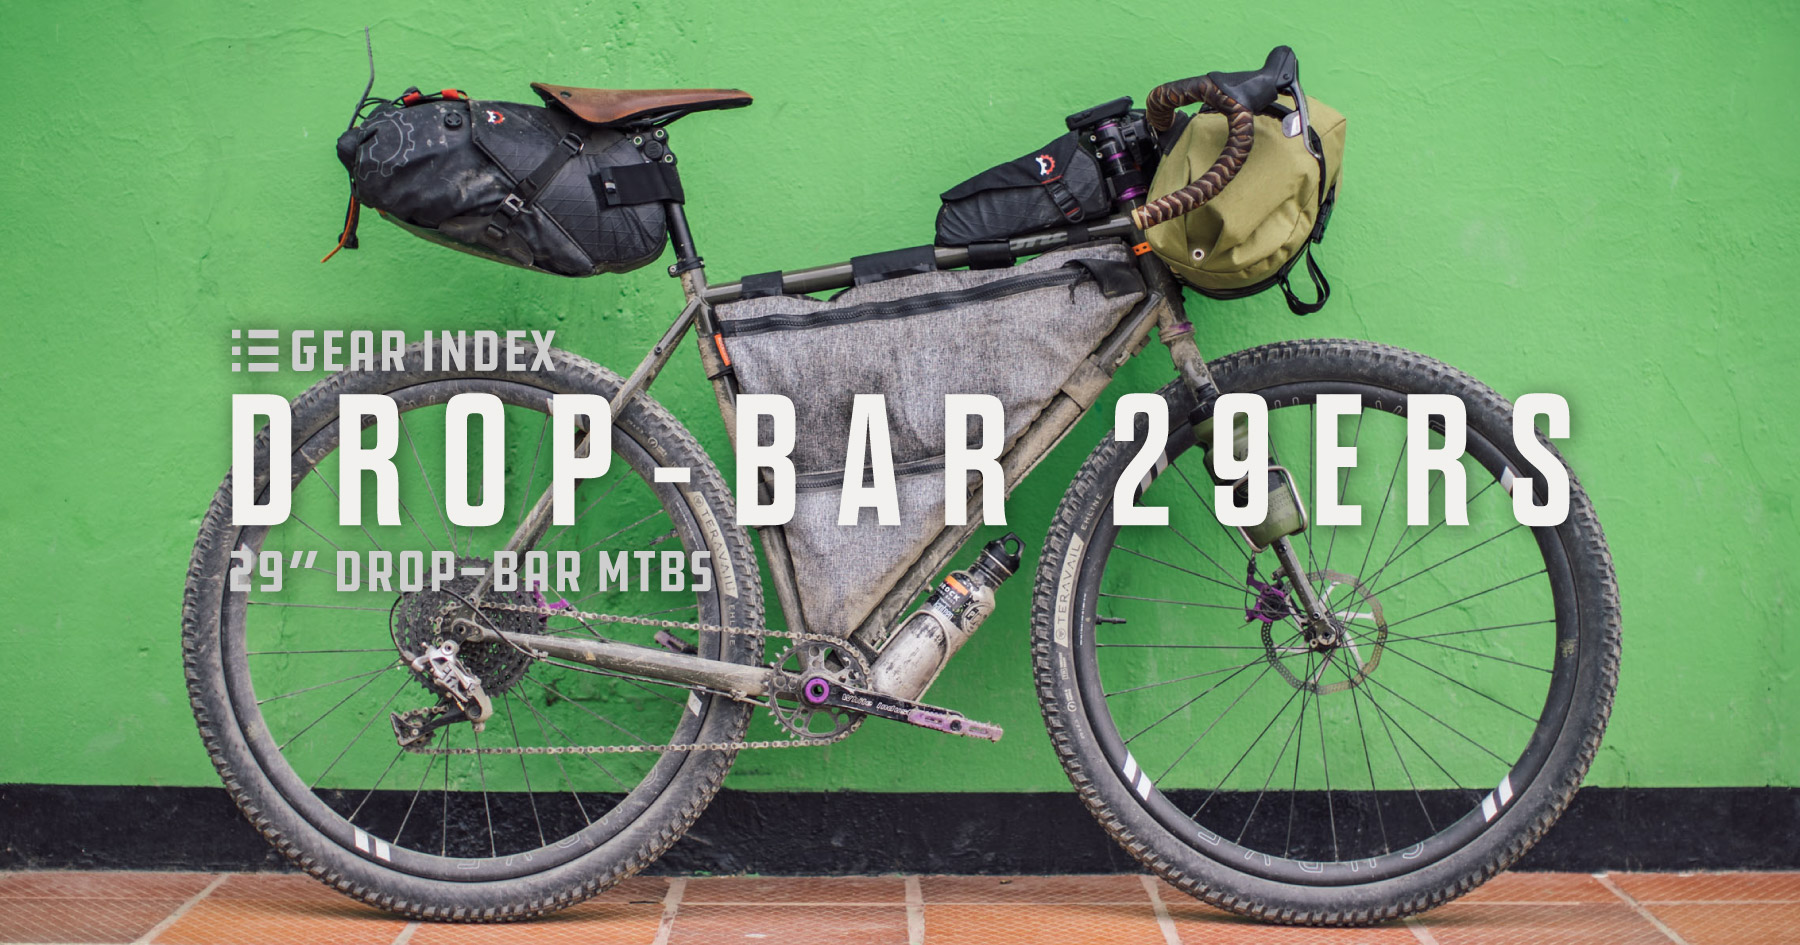 als Laster werkgelegenheid Complete List of 29” Drop-Bar Mountain Bikes - BIKEPACKING.com